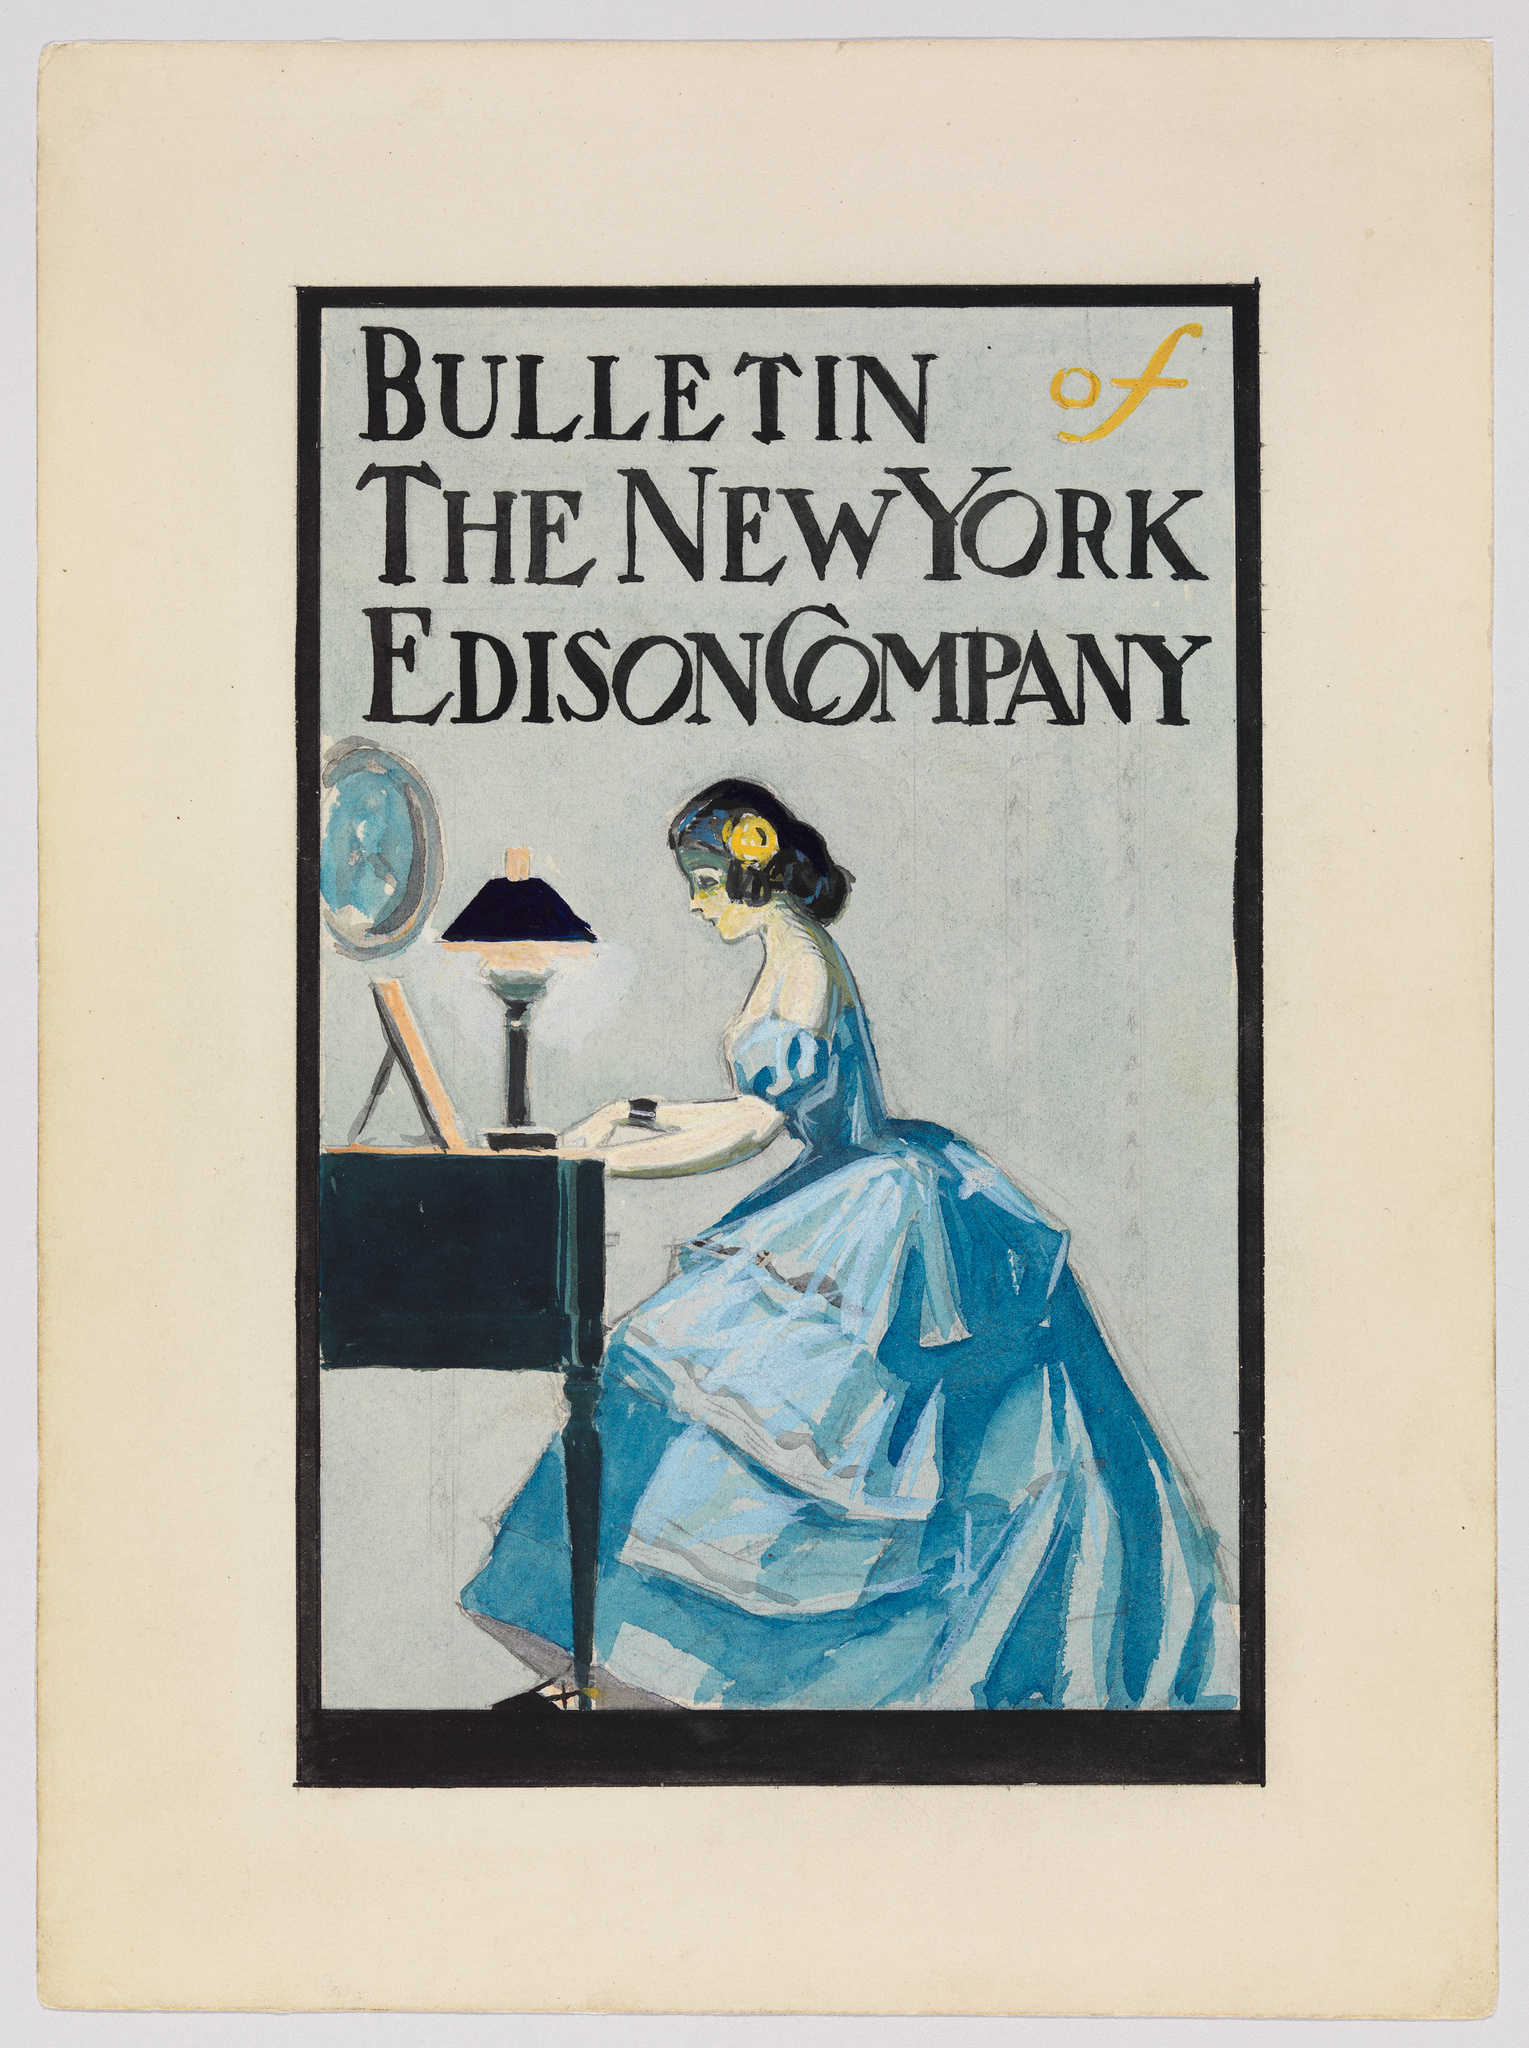 Edward Hopper | Cover illustration for Bulletin of the New York